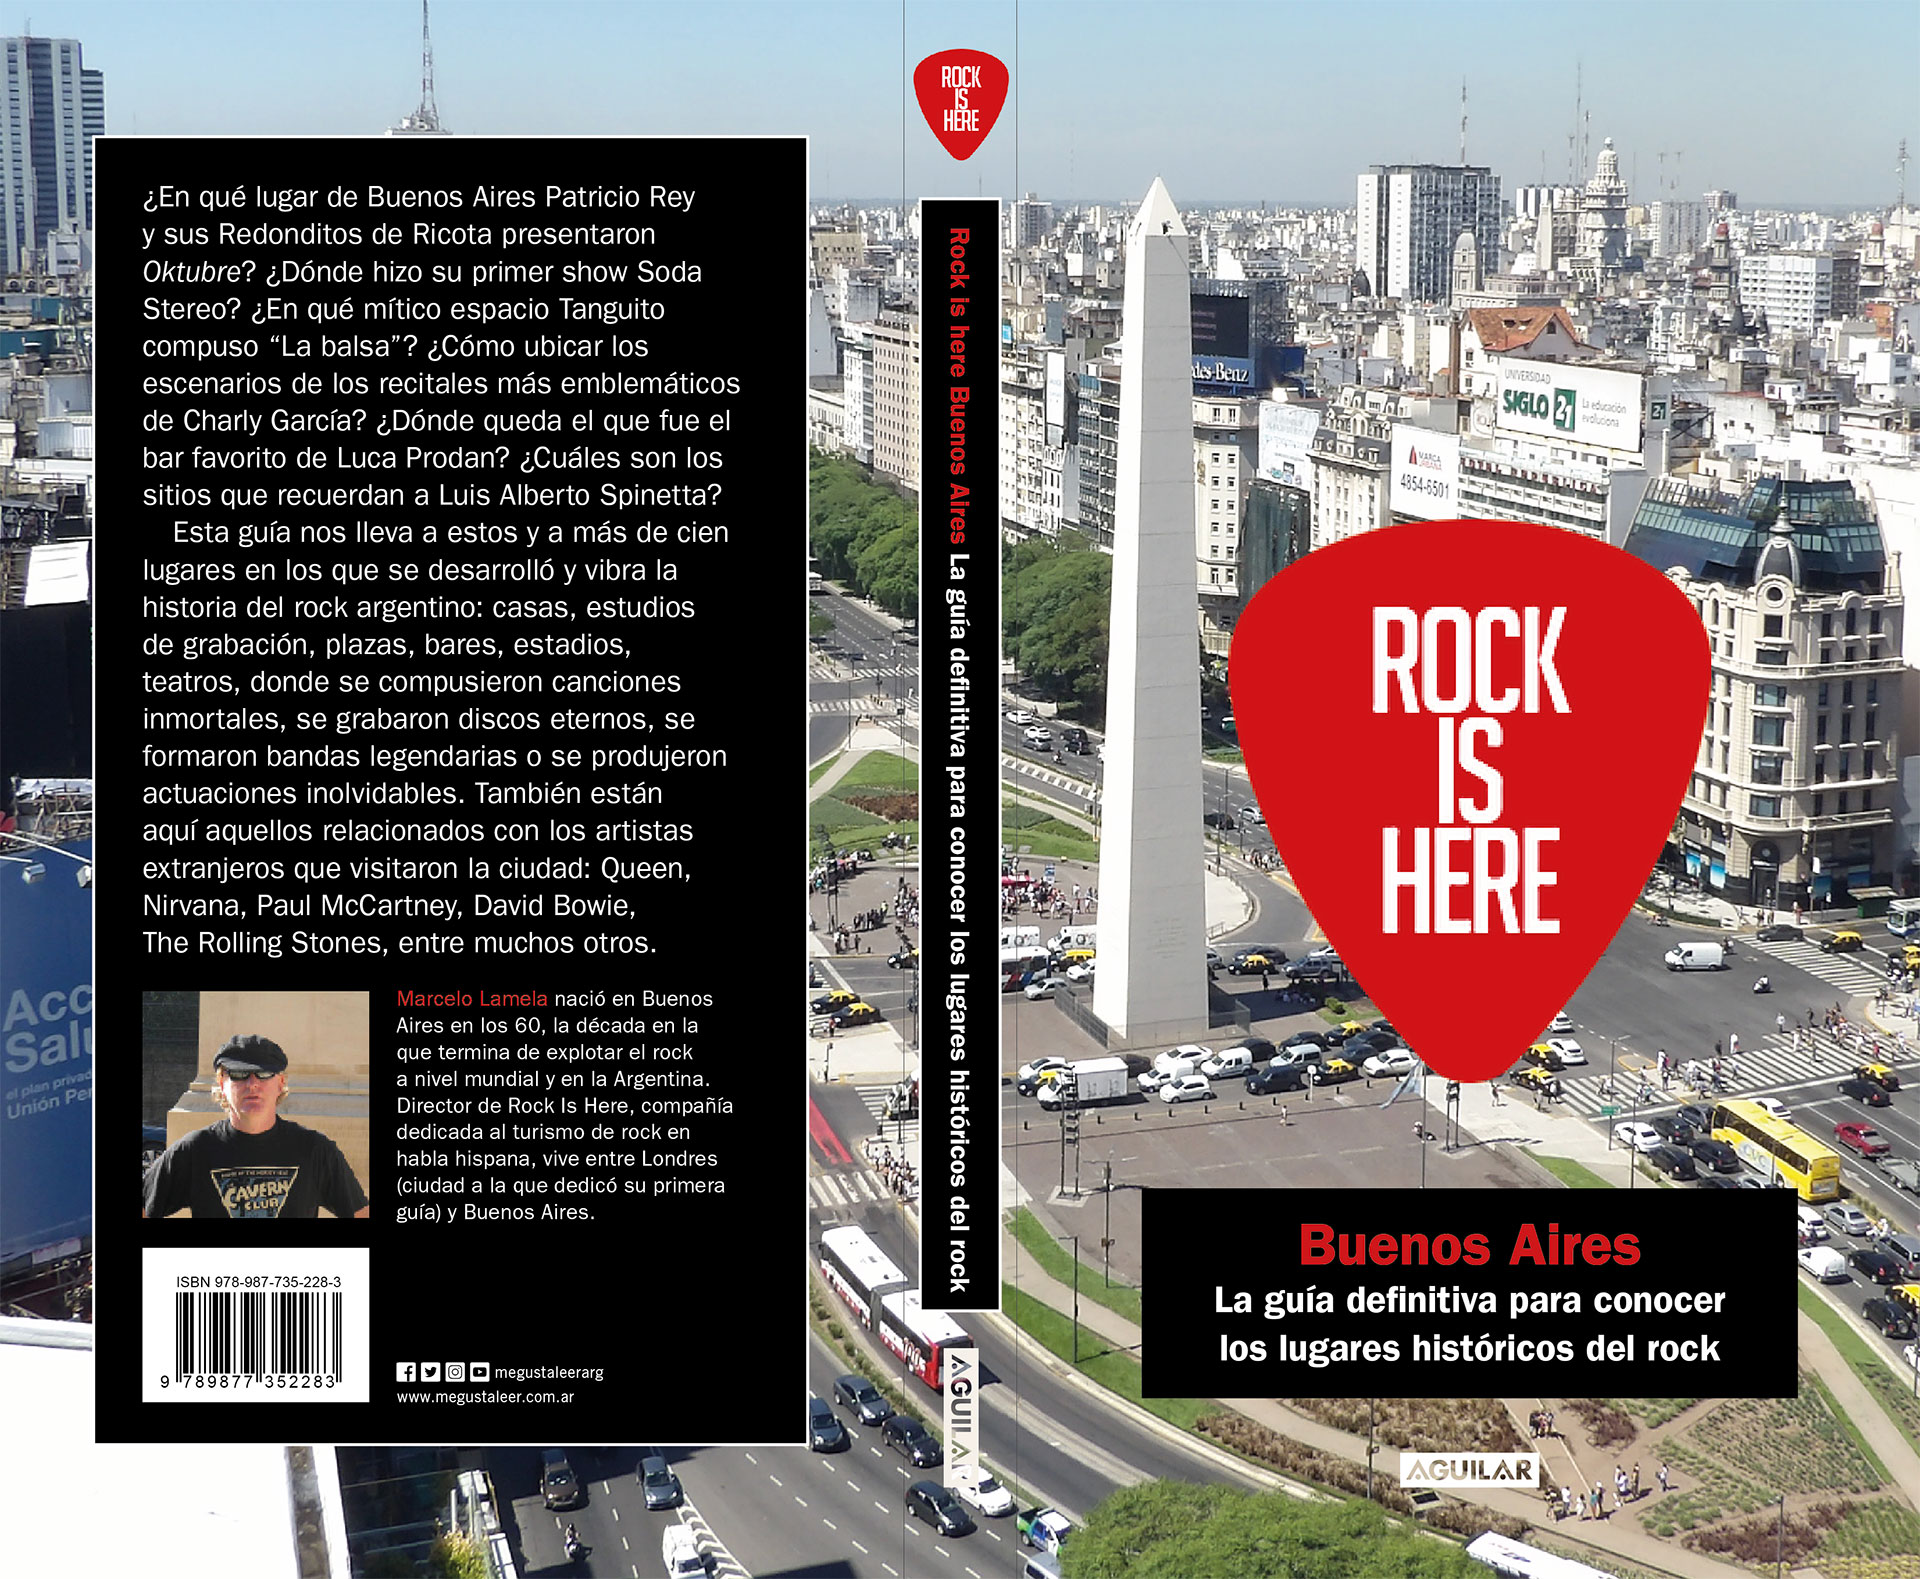 La portada de "Rock Is Here: Buenos Aires"